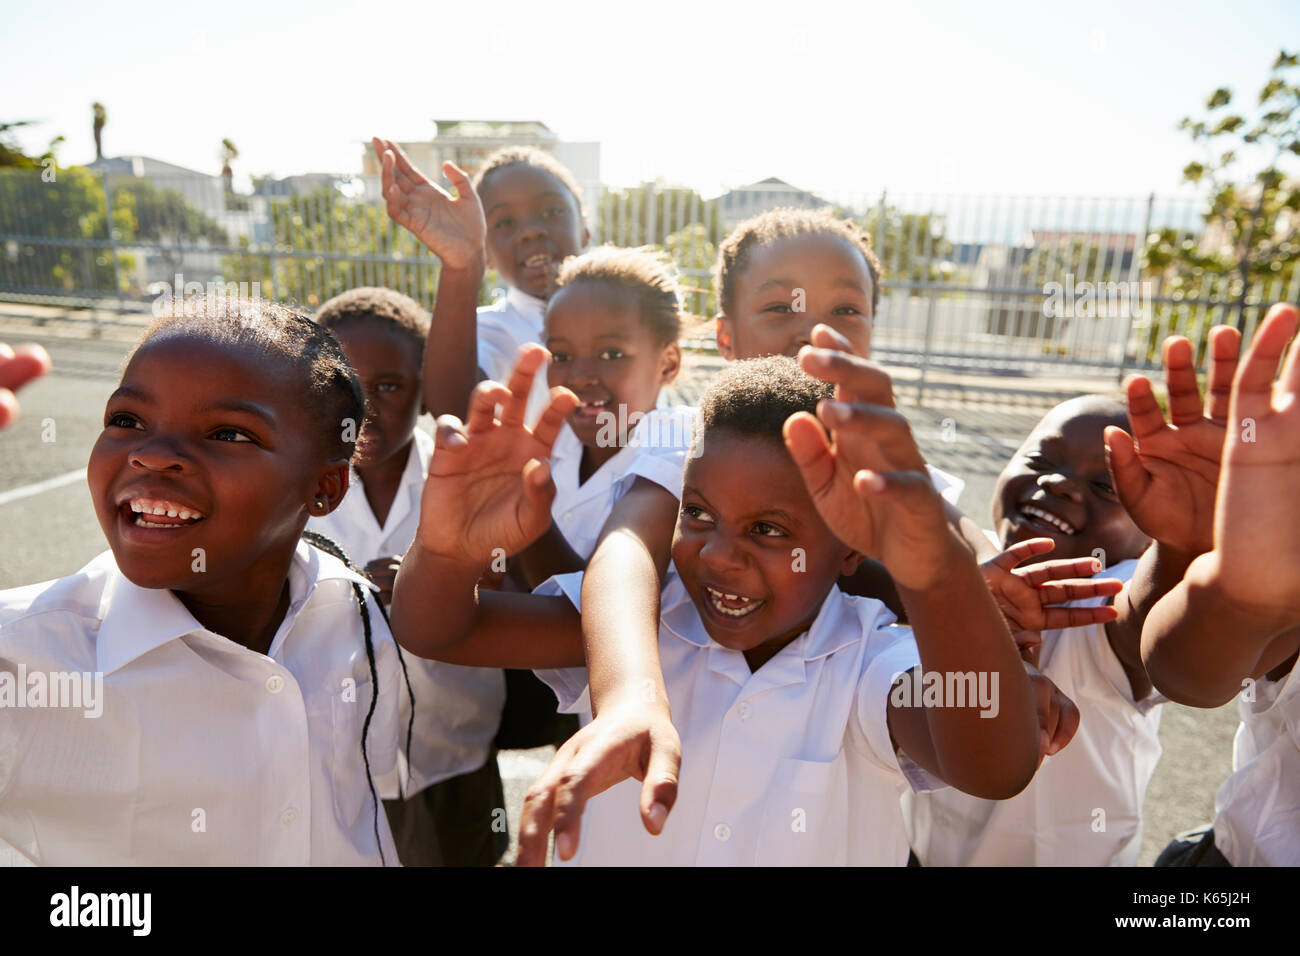 Elementary school kids in playground waving to camera Stock Photo